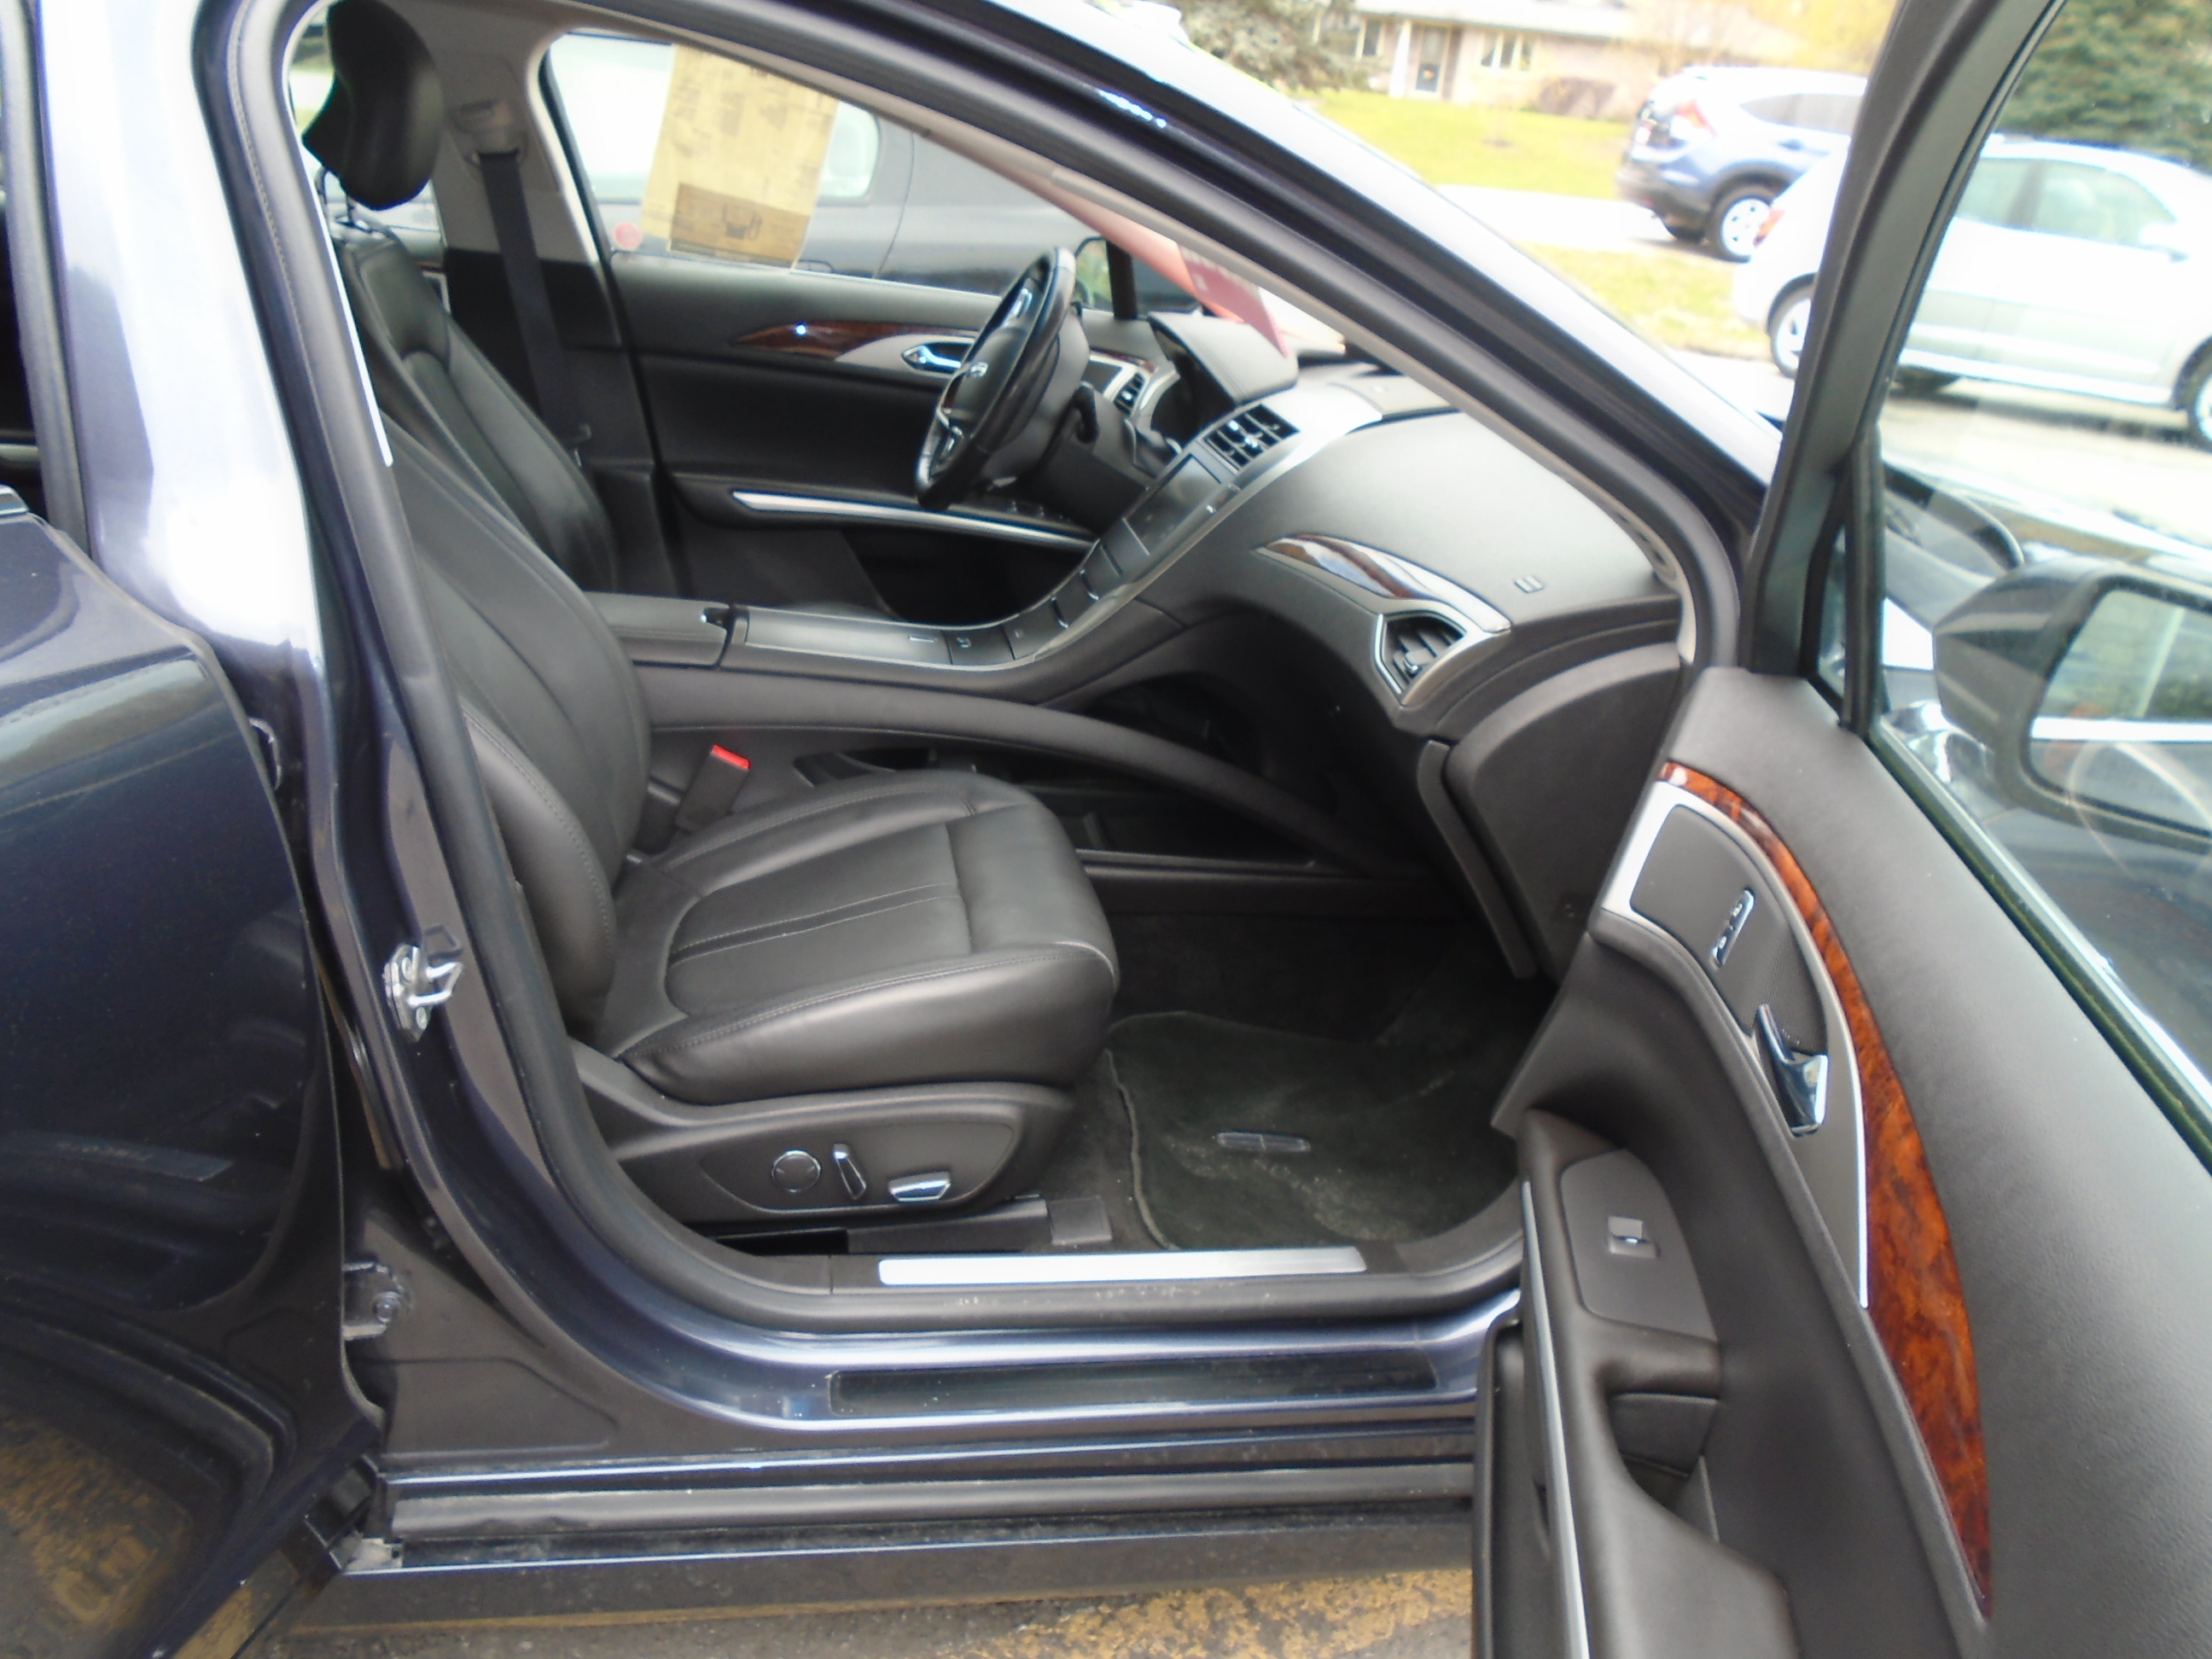 2013 Lincoln Mkz Interior Pics 2 Bob Currie Auto Sales